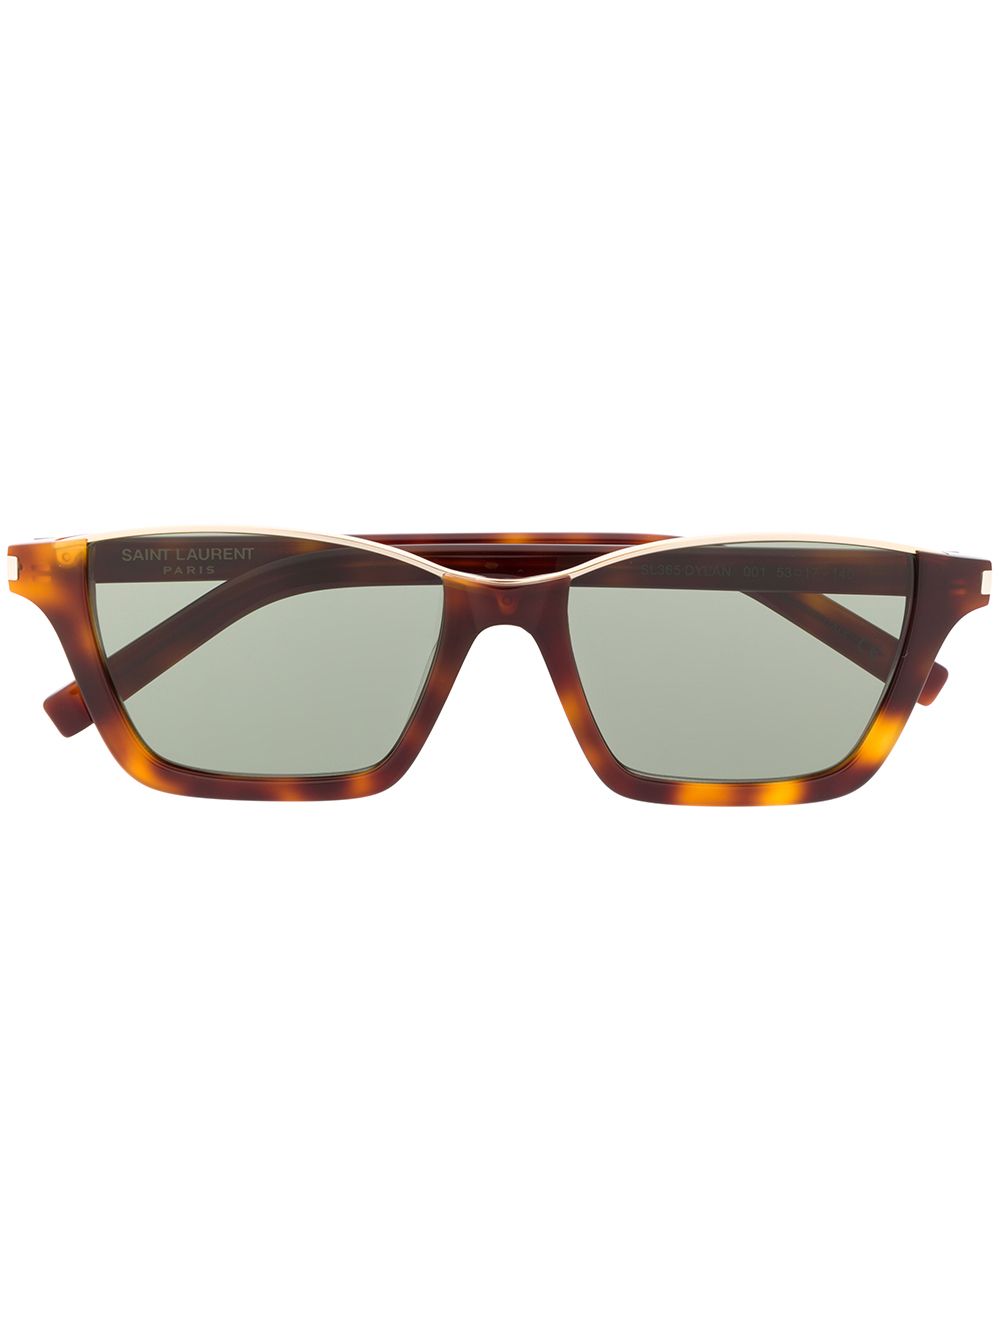 фото Saint laurent eyewear солнцезащитные очки dylan в прямоугольной оправе